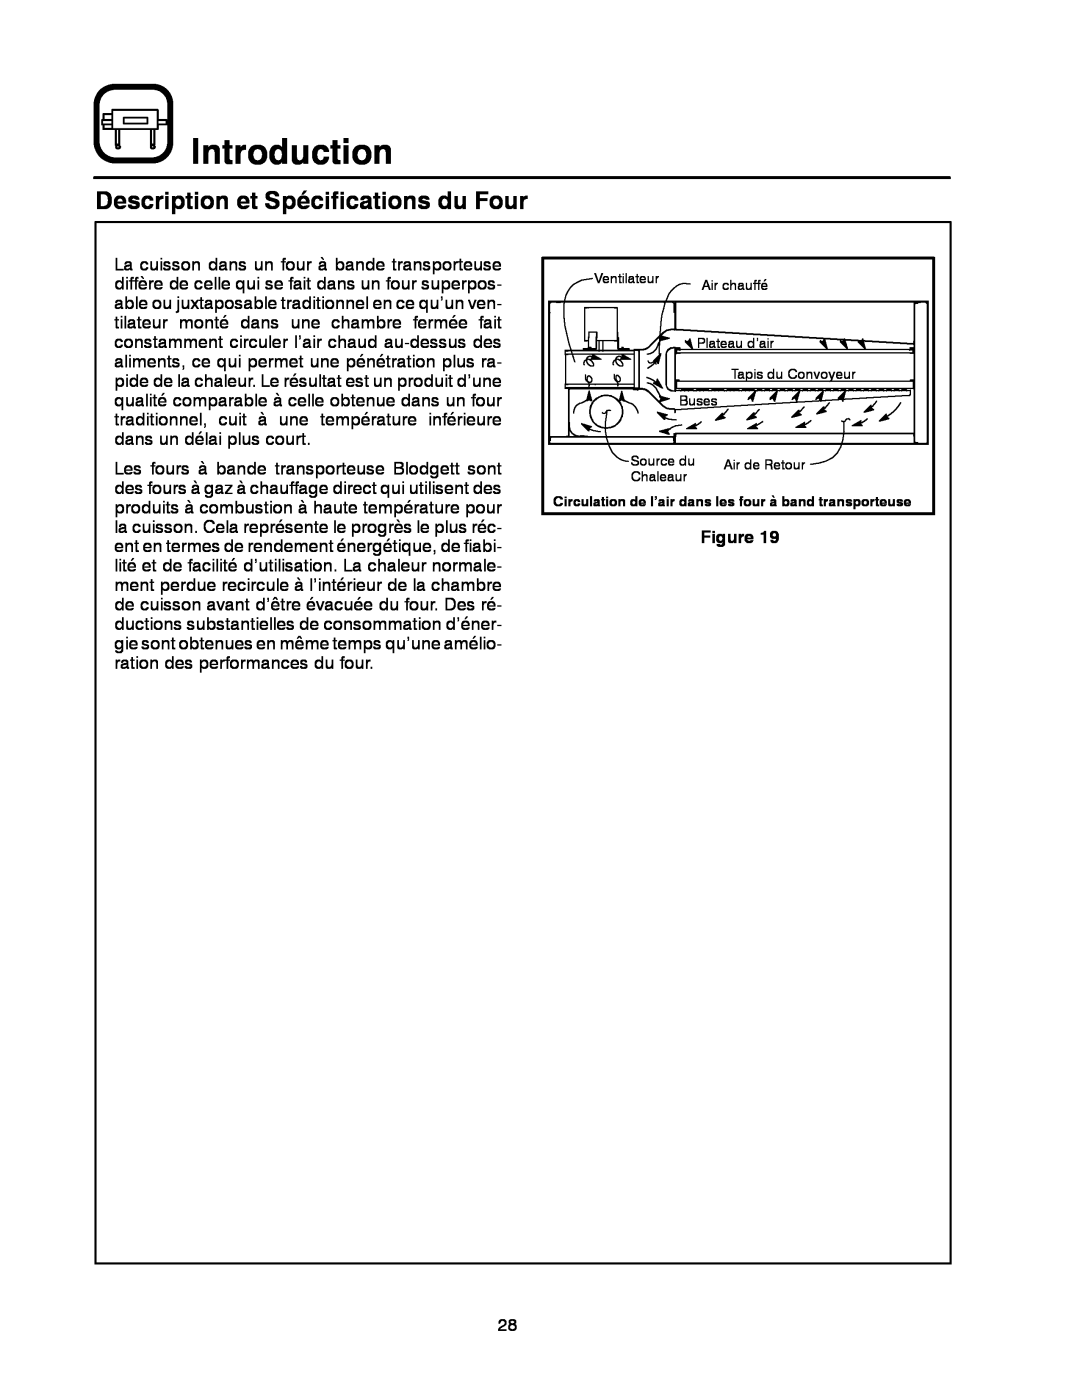 Blodgett MT1828G manual Description et Spécifications du Four, Introduction, Ventilateur, Plateau d’air, Tapis du Convoyeur 